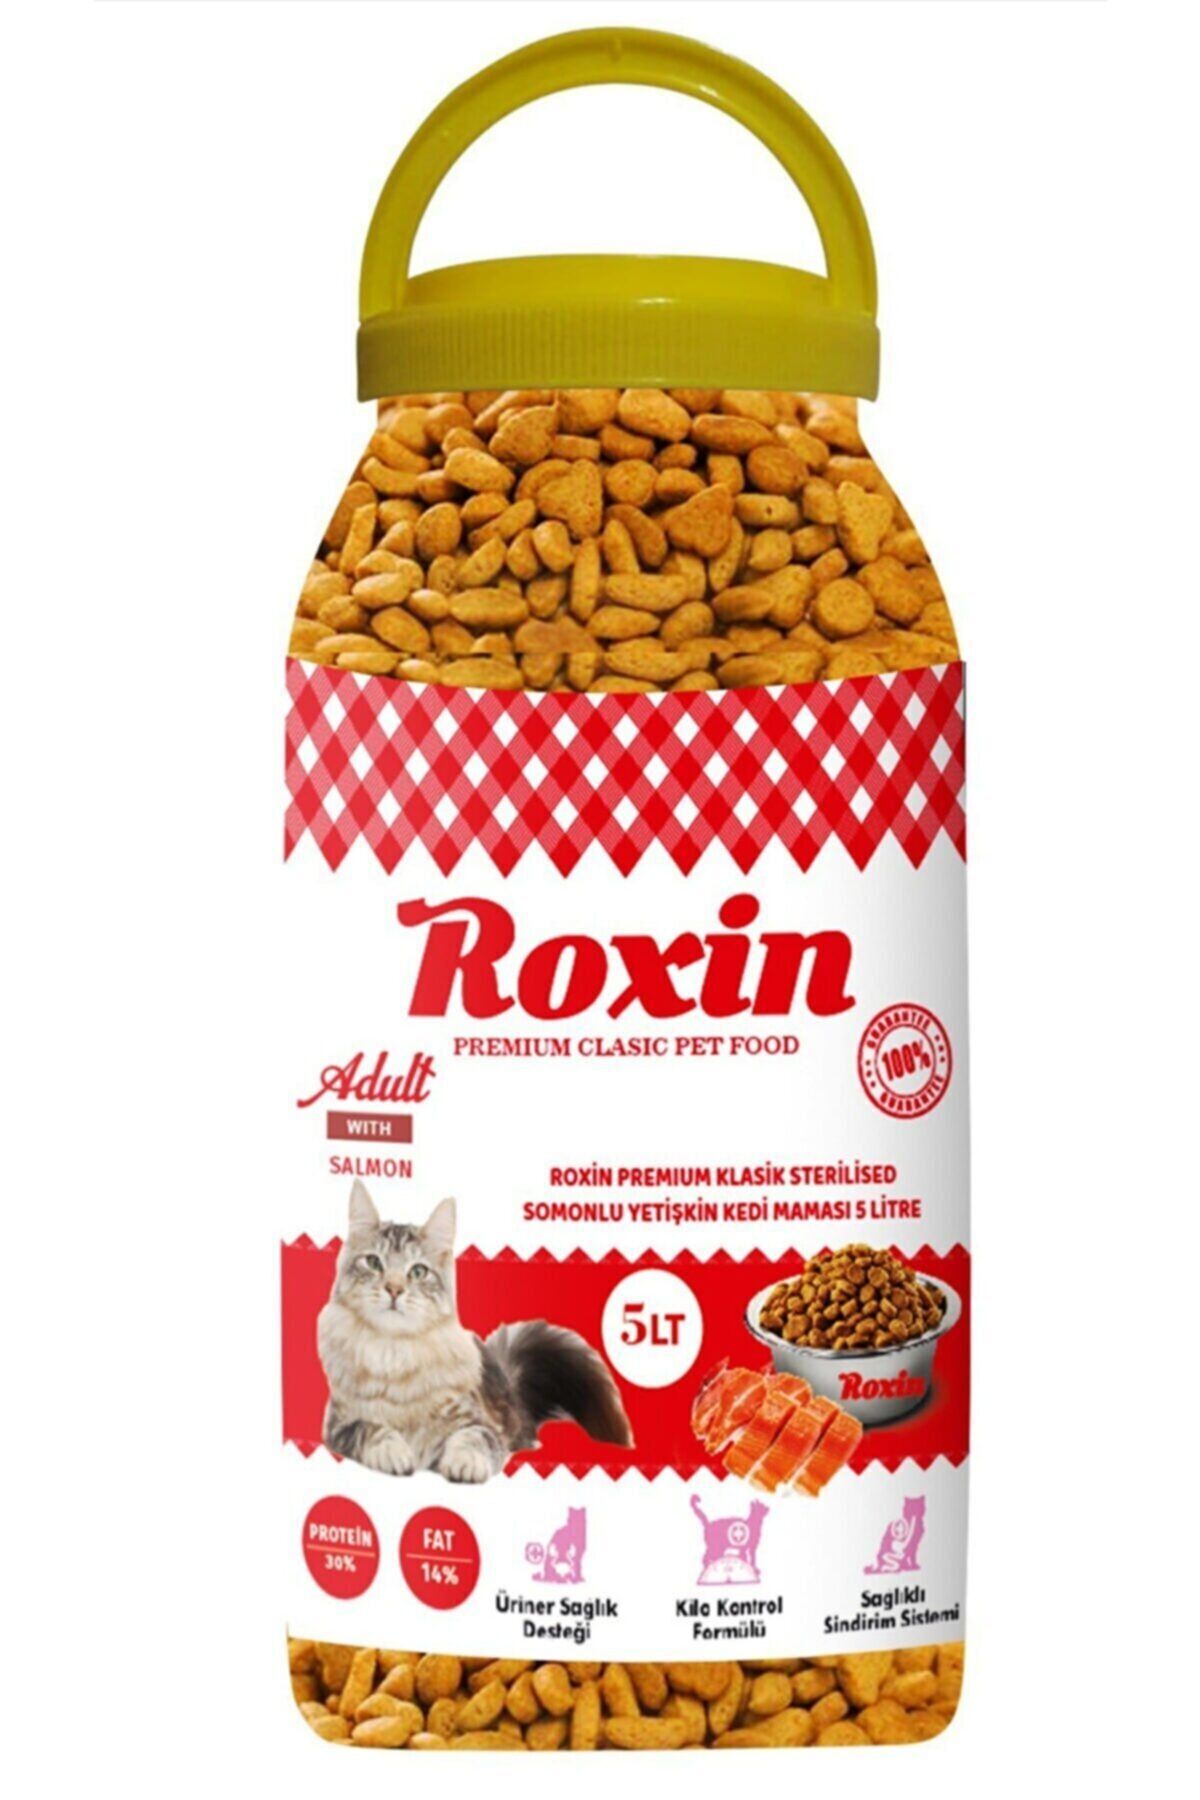 Roxin Premium Somonlu Yetişkin Kedi Maması 5 Lt